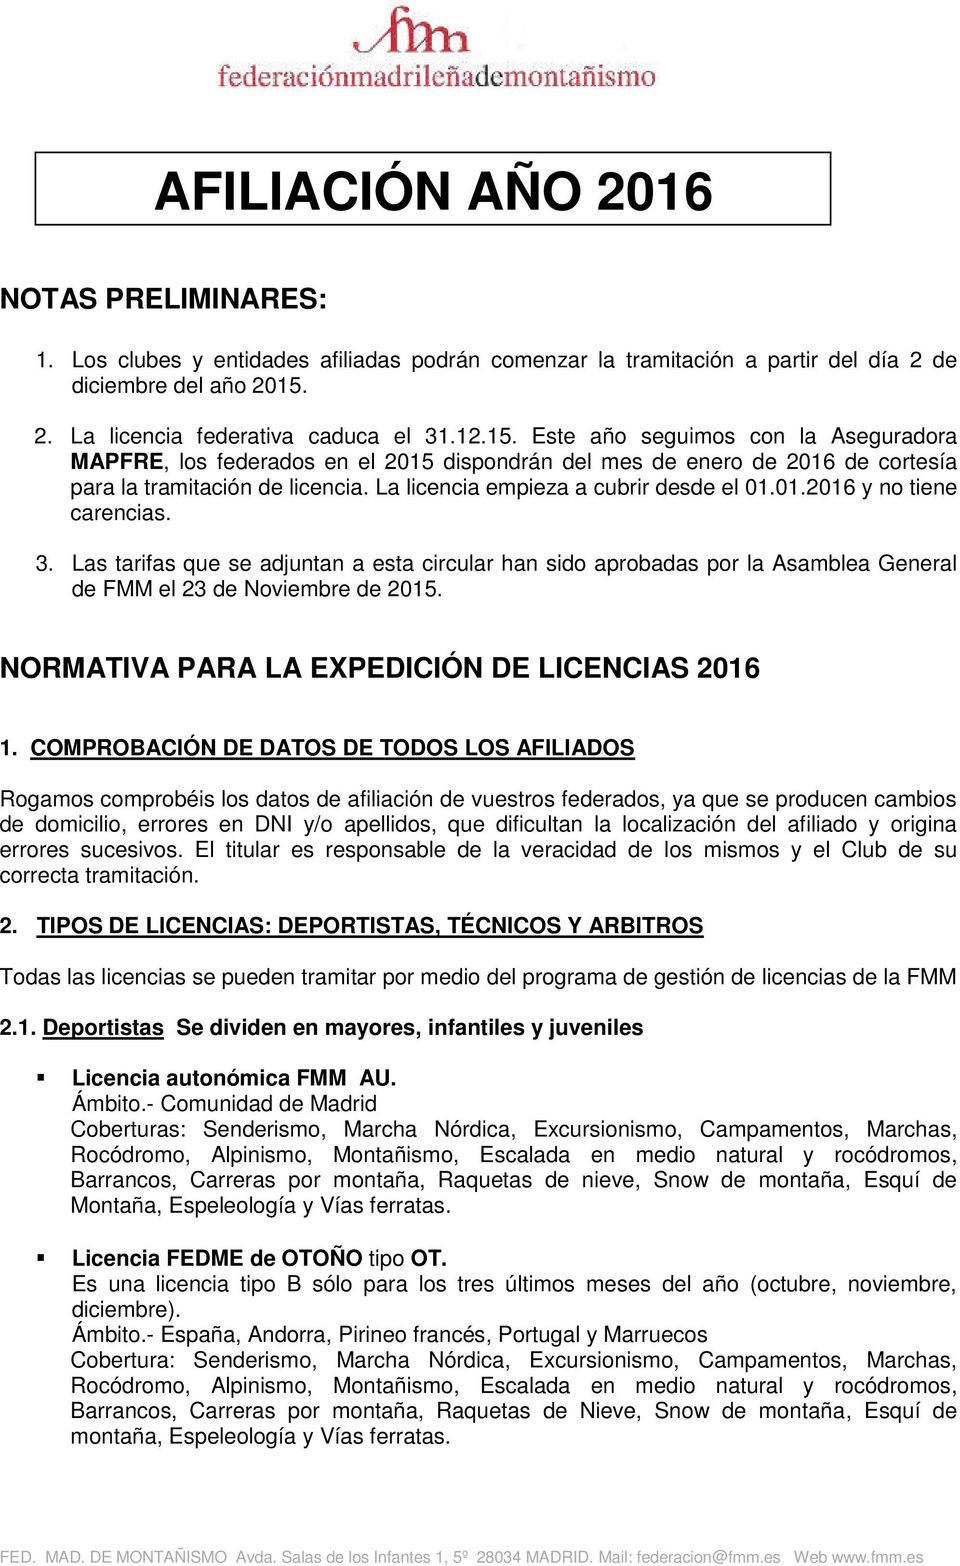 La licencia empieza a cubrir desde el 01.01.2016 y no tiene carencias. 3. Las tarifas que se adjuntan a esta circular han sido aprobadas por la Asamblea General de FMM el 23 de Noviembre de 2015.